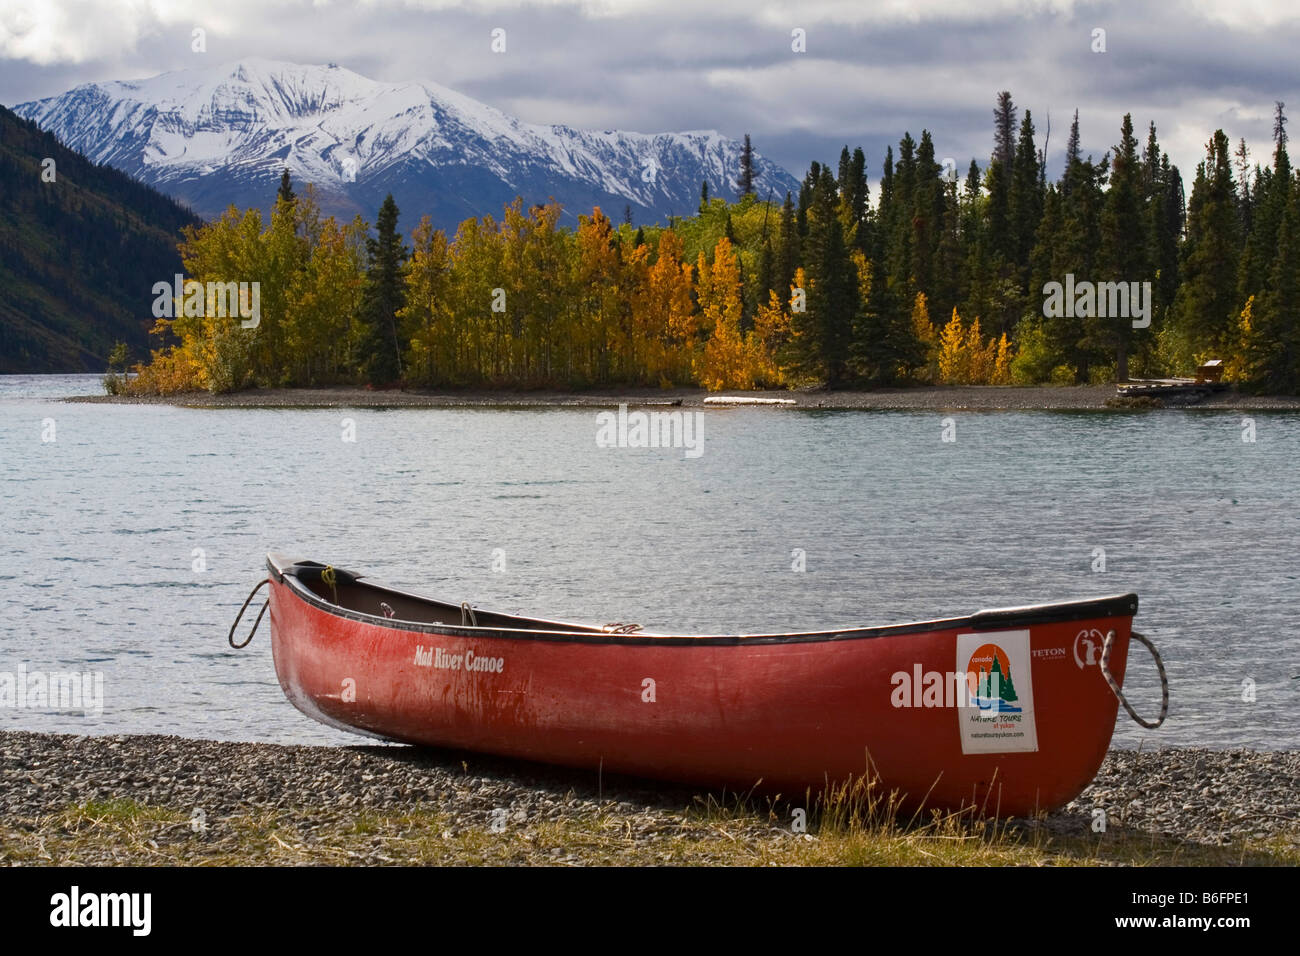 Couleurs d'automne, canoe, Kathleen Lake, St. Elias derrière, Réserve de parc national Kluane, Yukon, Canada, Amérique du Nord Banque D'Images